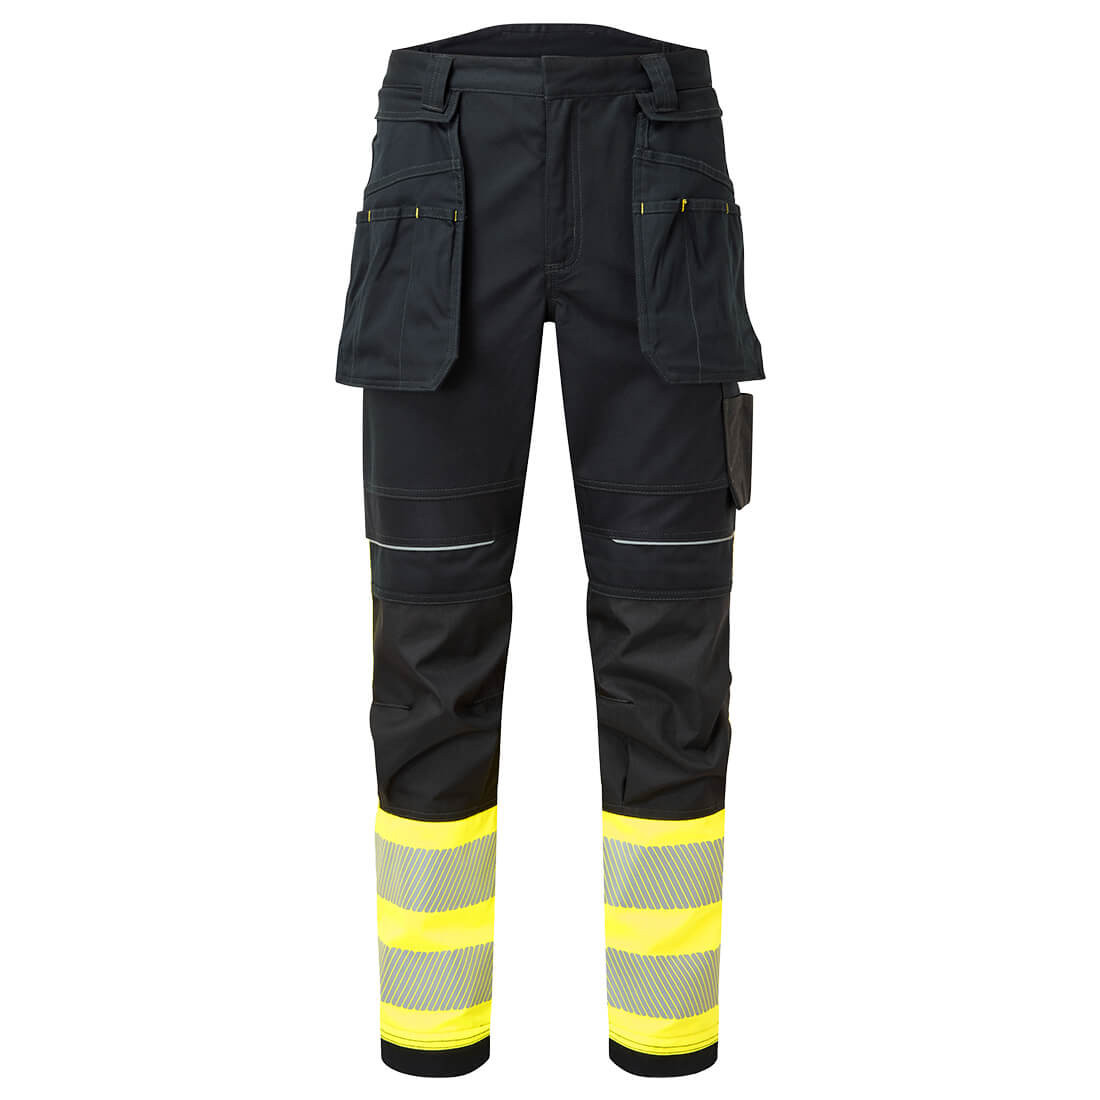 PW3 FR Pantaloni Holster Hi Vis Classe 1 - Abbigliamento di protezione